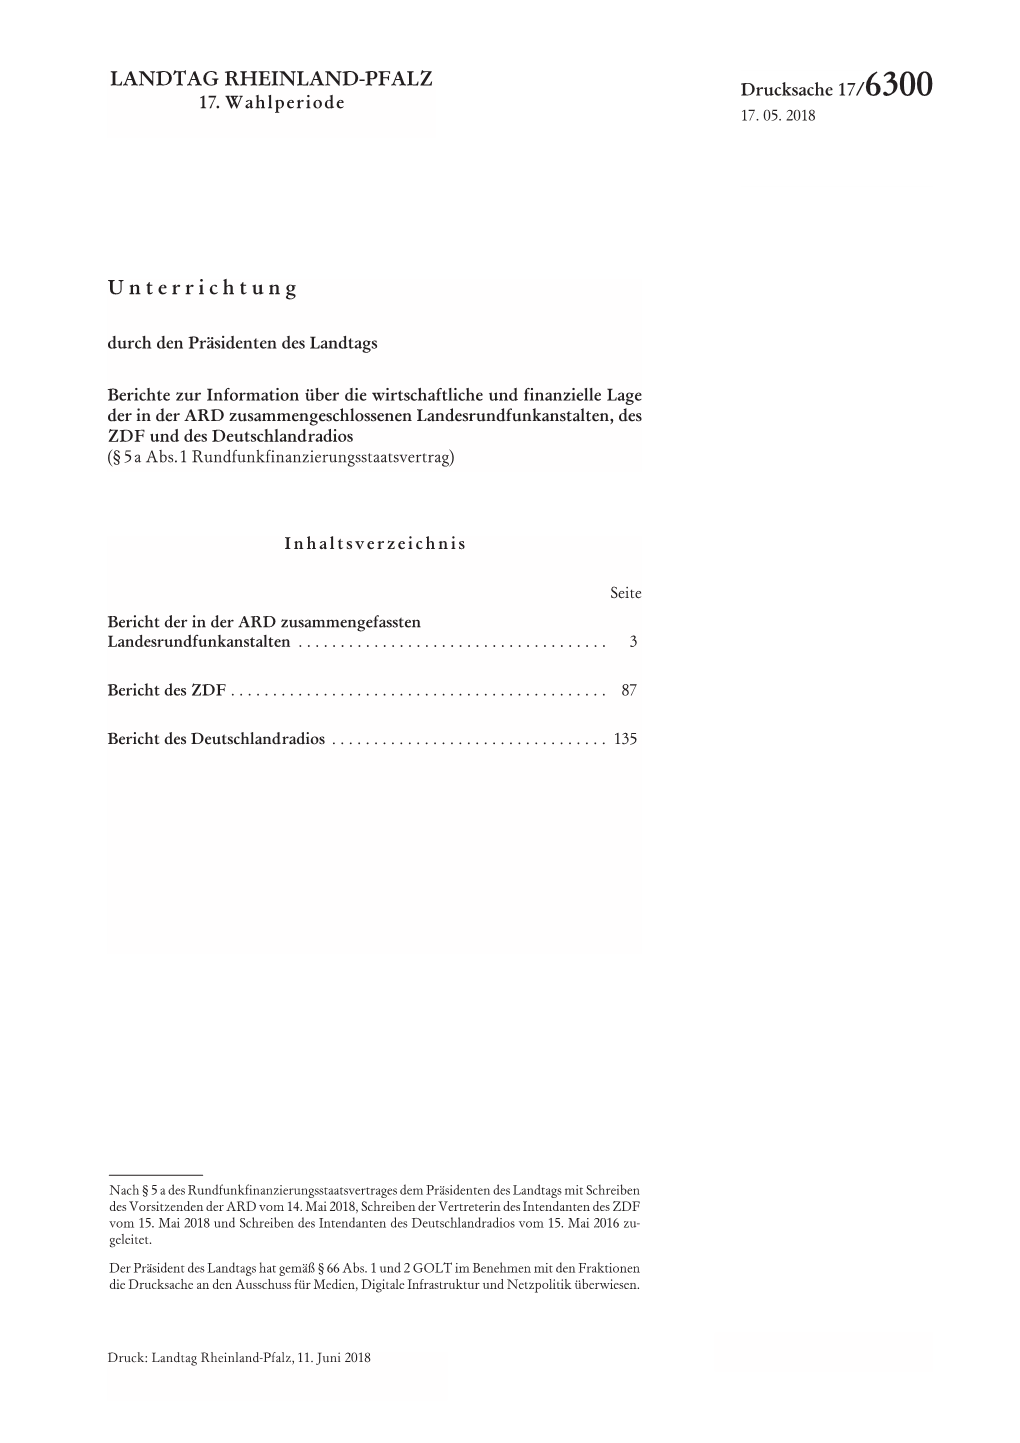 Drucksache 17/6300 Landtag Rheinland-Pfalz − 17.Wahlperiode